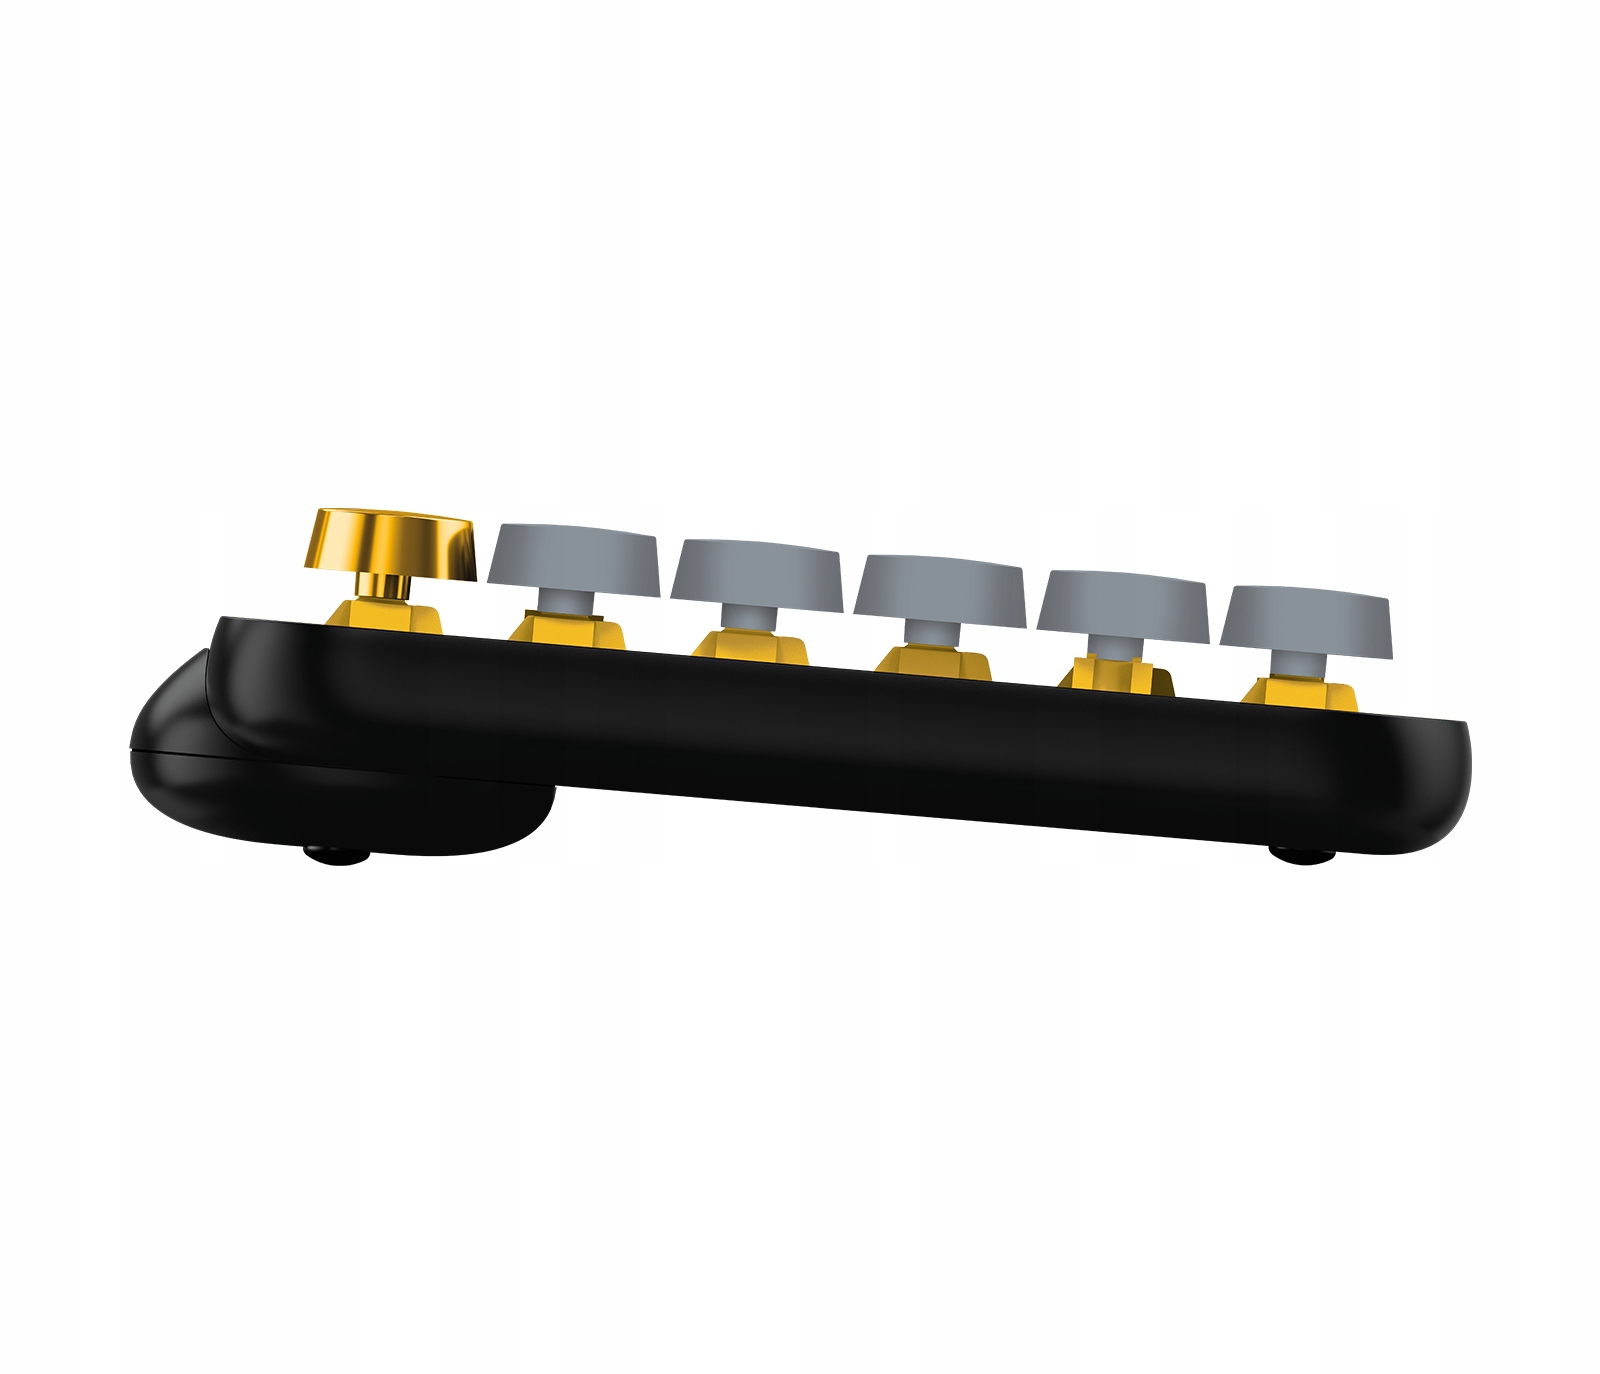 Clavier Logitech Mecanique Sans Fil POP Keys yellow avec Touches Emoji  Personnalisables, Bluetooth - 920-010722